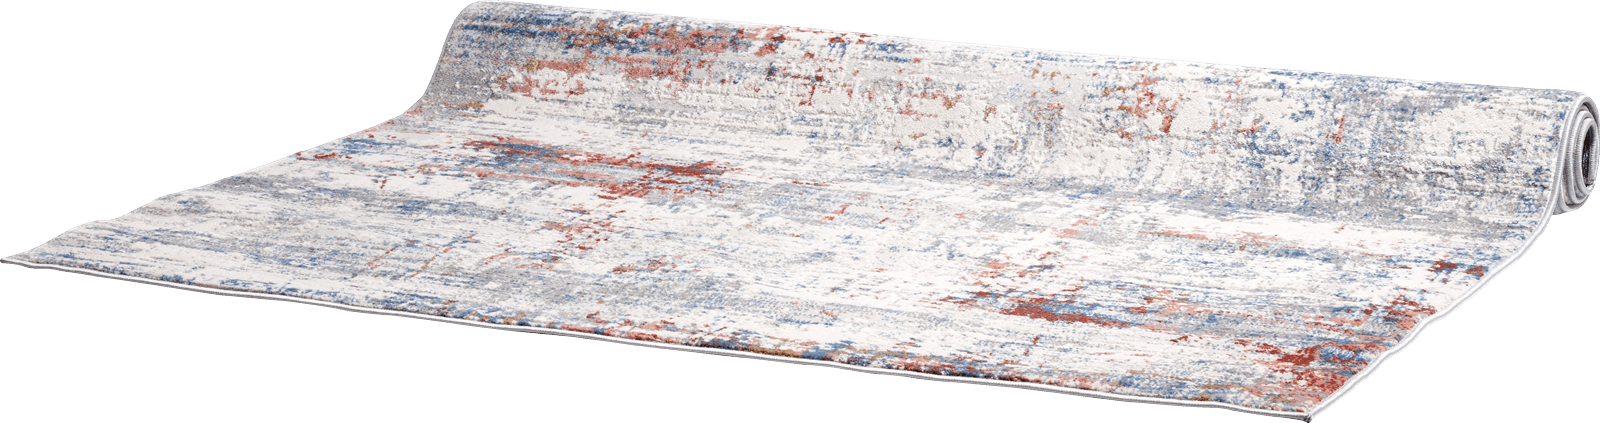 XOOON - Coco Maison - Jessy karpet 160x230cm